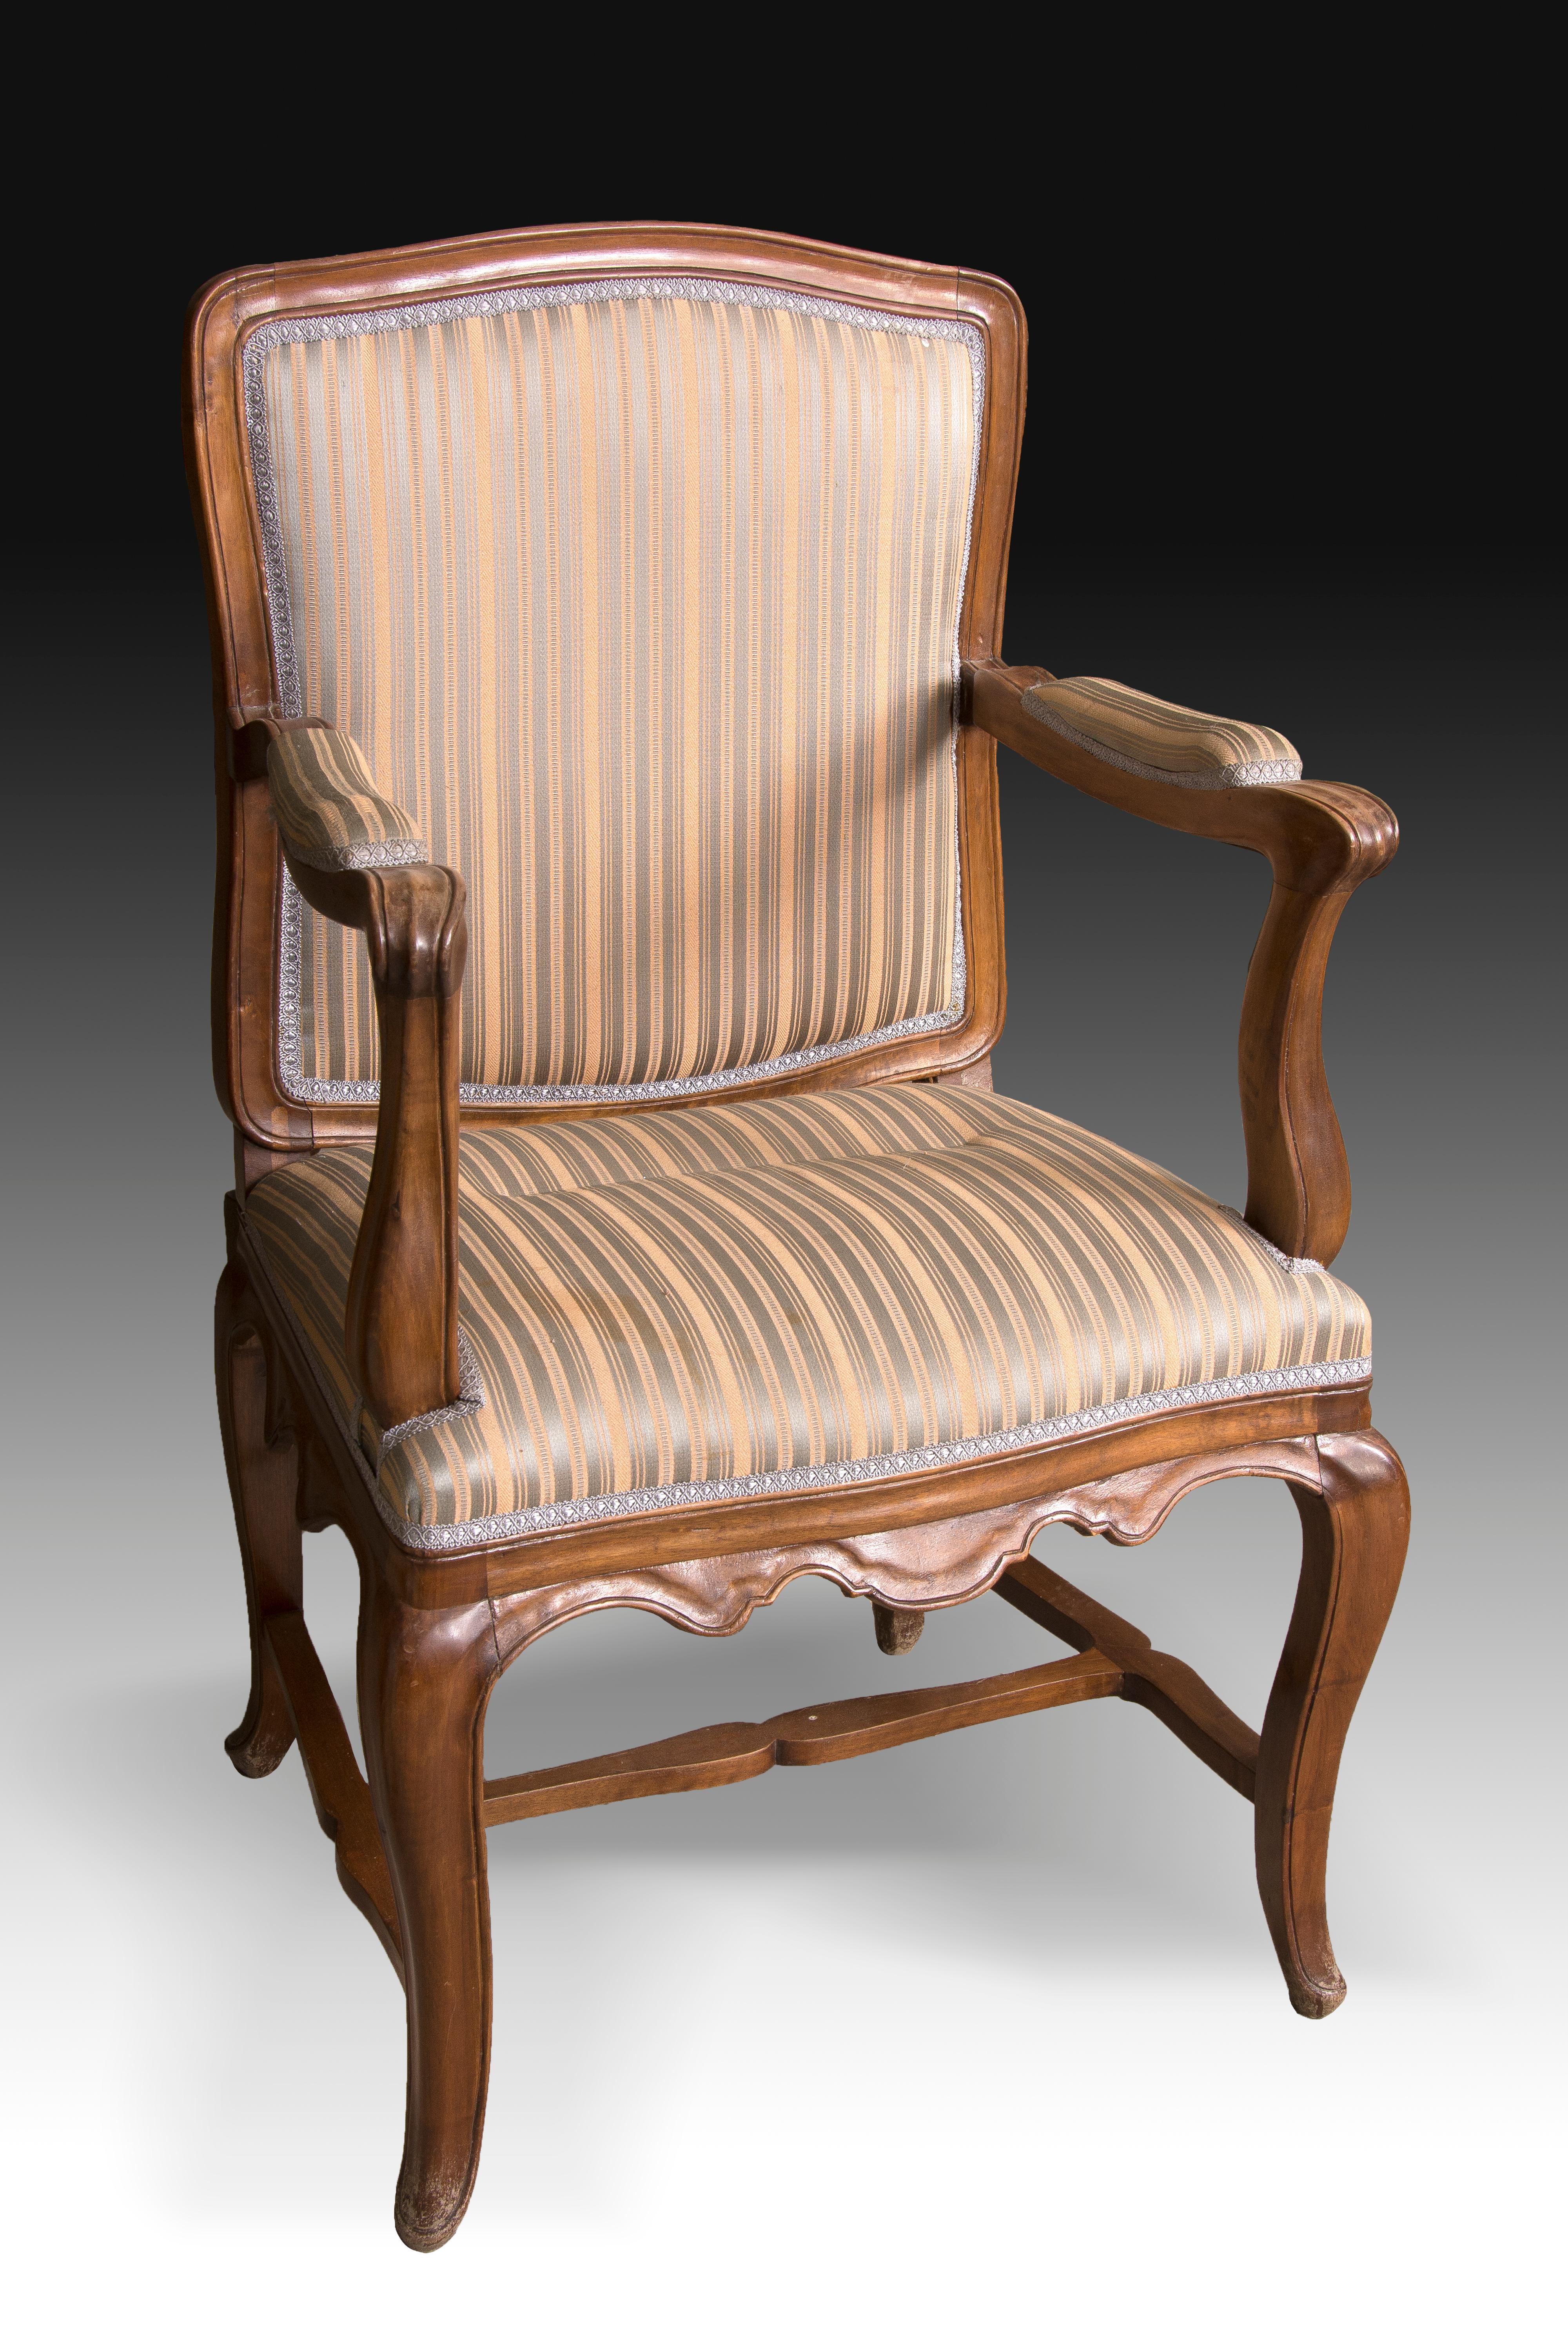 Sitzmöbel aus Nussbaumholz, 18. Jahrhundert (Neoklassisch)